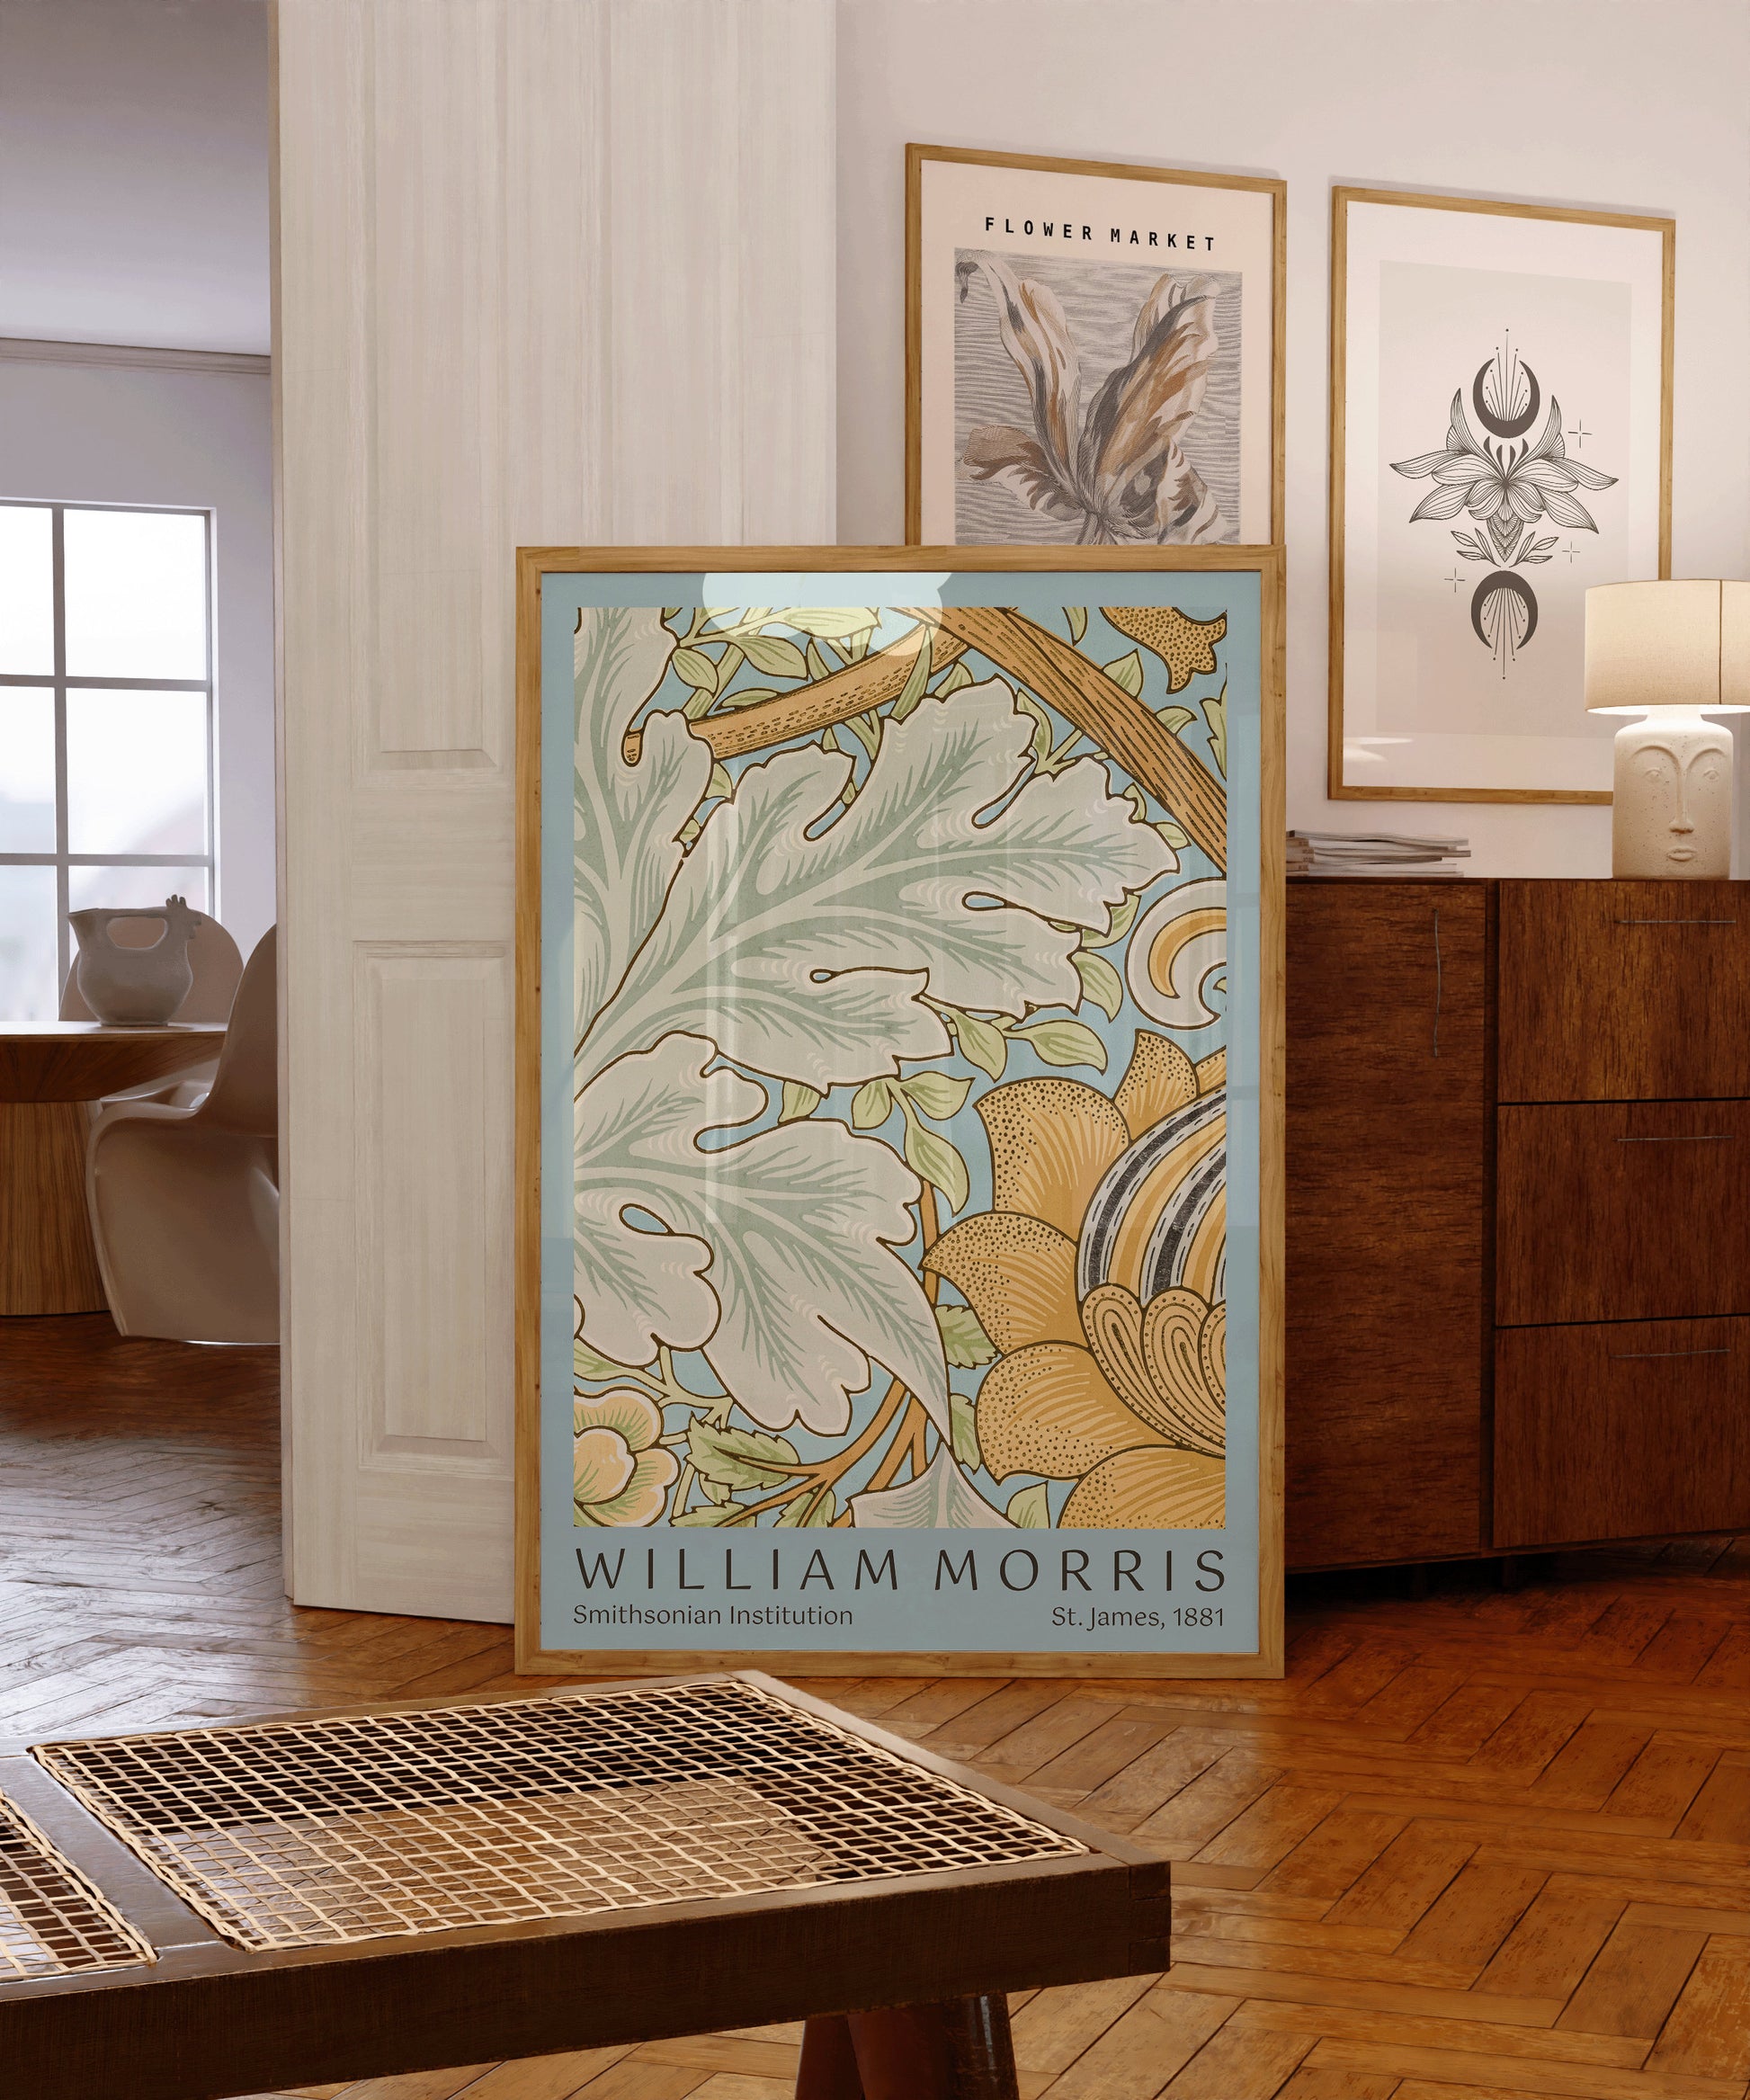 William Morris Poster Exhibition St. James Art Nouveau Flower Pattern Market Print Museum Exhibition Poster Unique Home Office Gift Decor